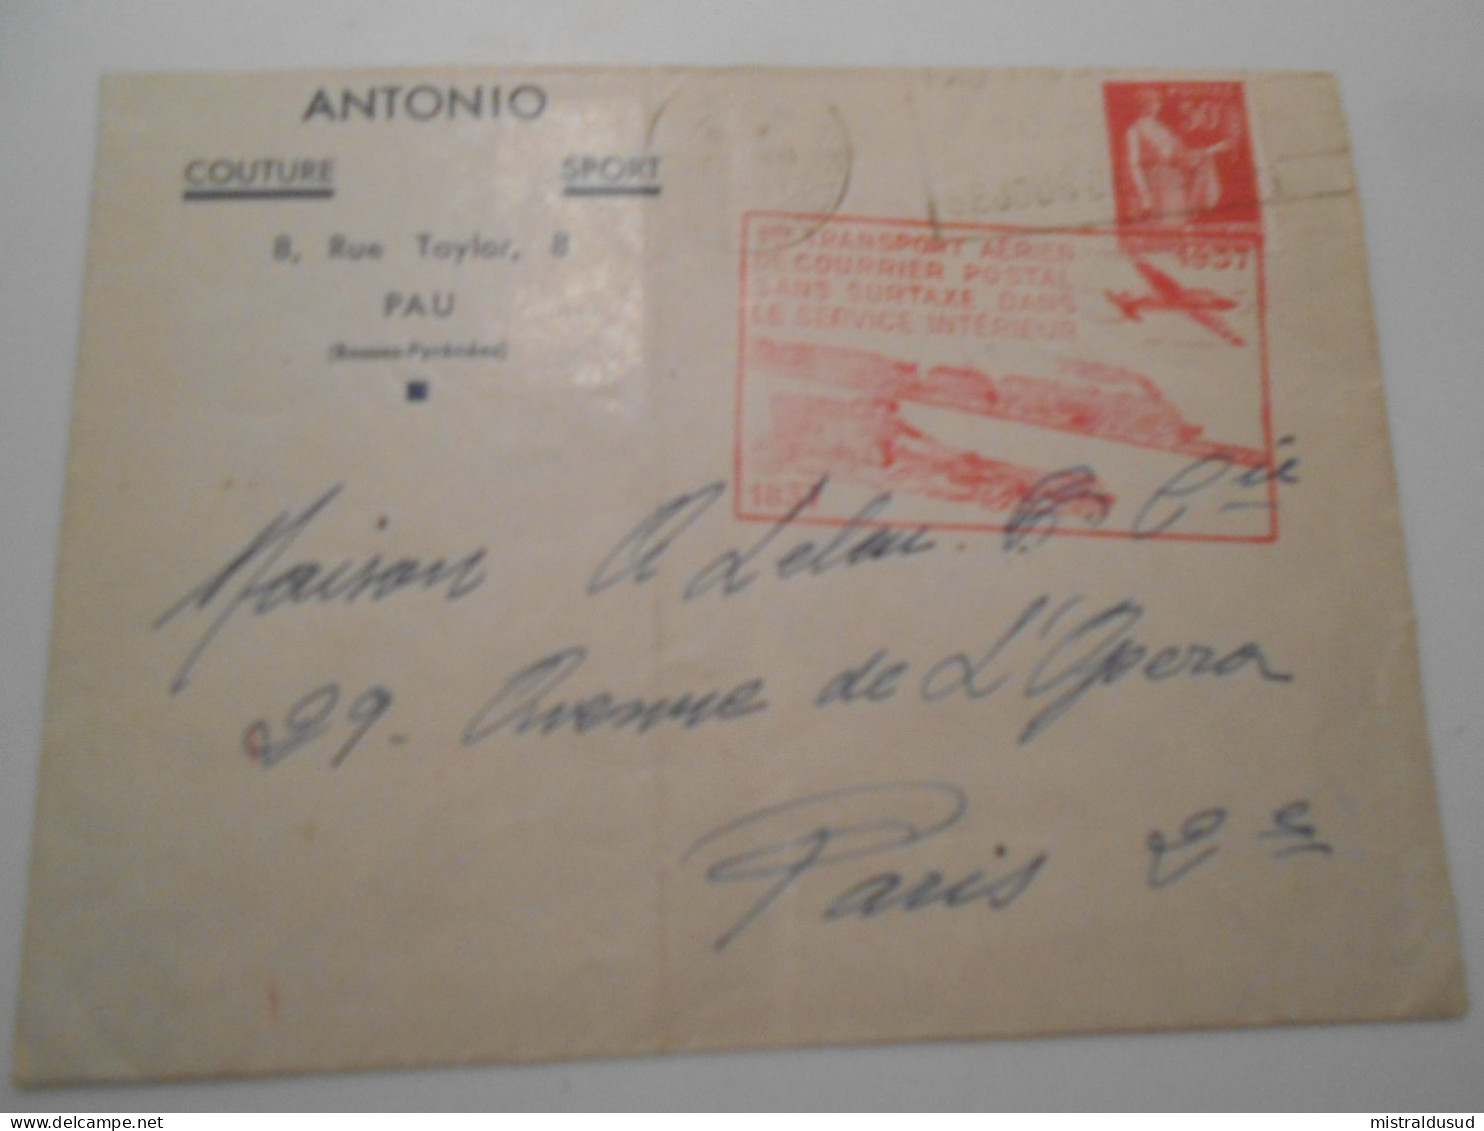 France Poste Aerienne , Lettre De Pau 1937 Pour Paris, 1er Transport Aerien De çourrier  Sans Surtaxe - 1927-1959 Covers & Documents